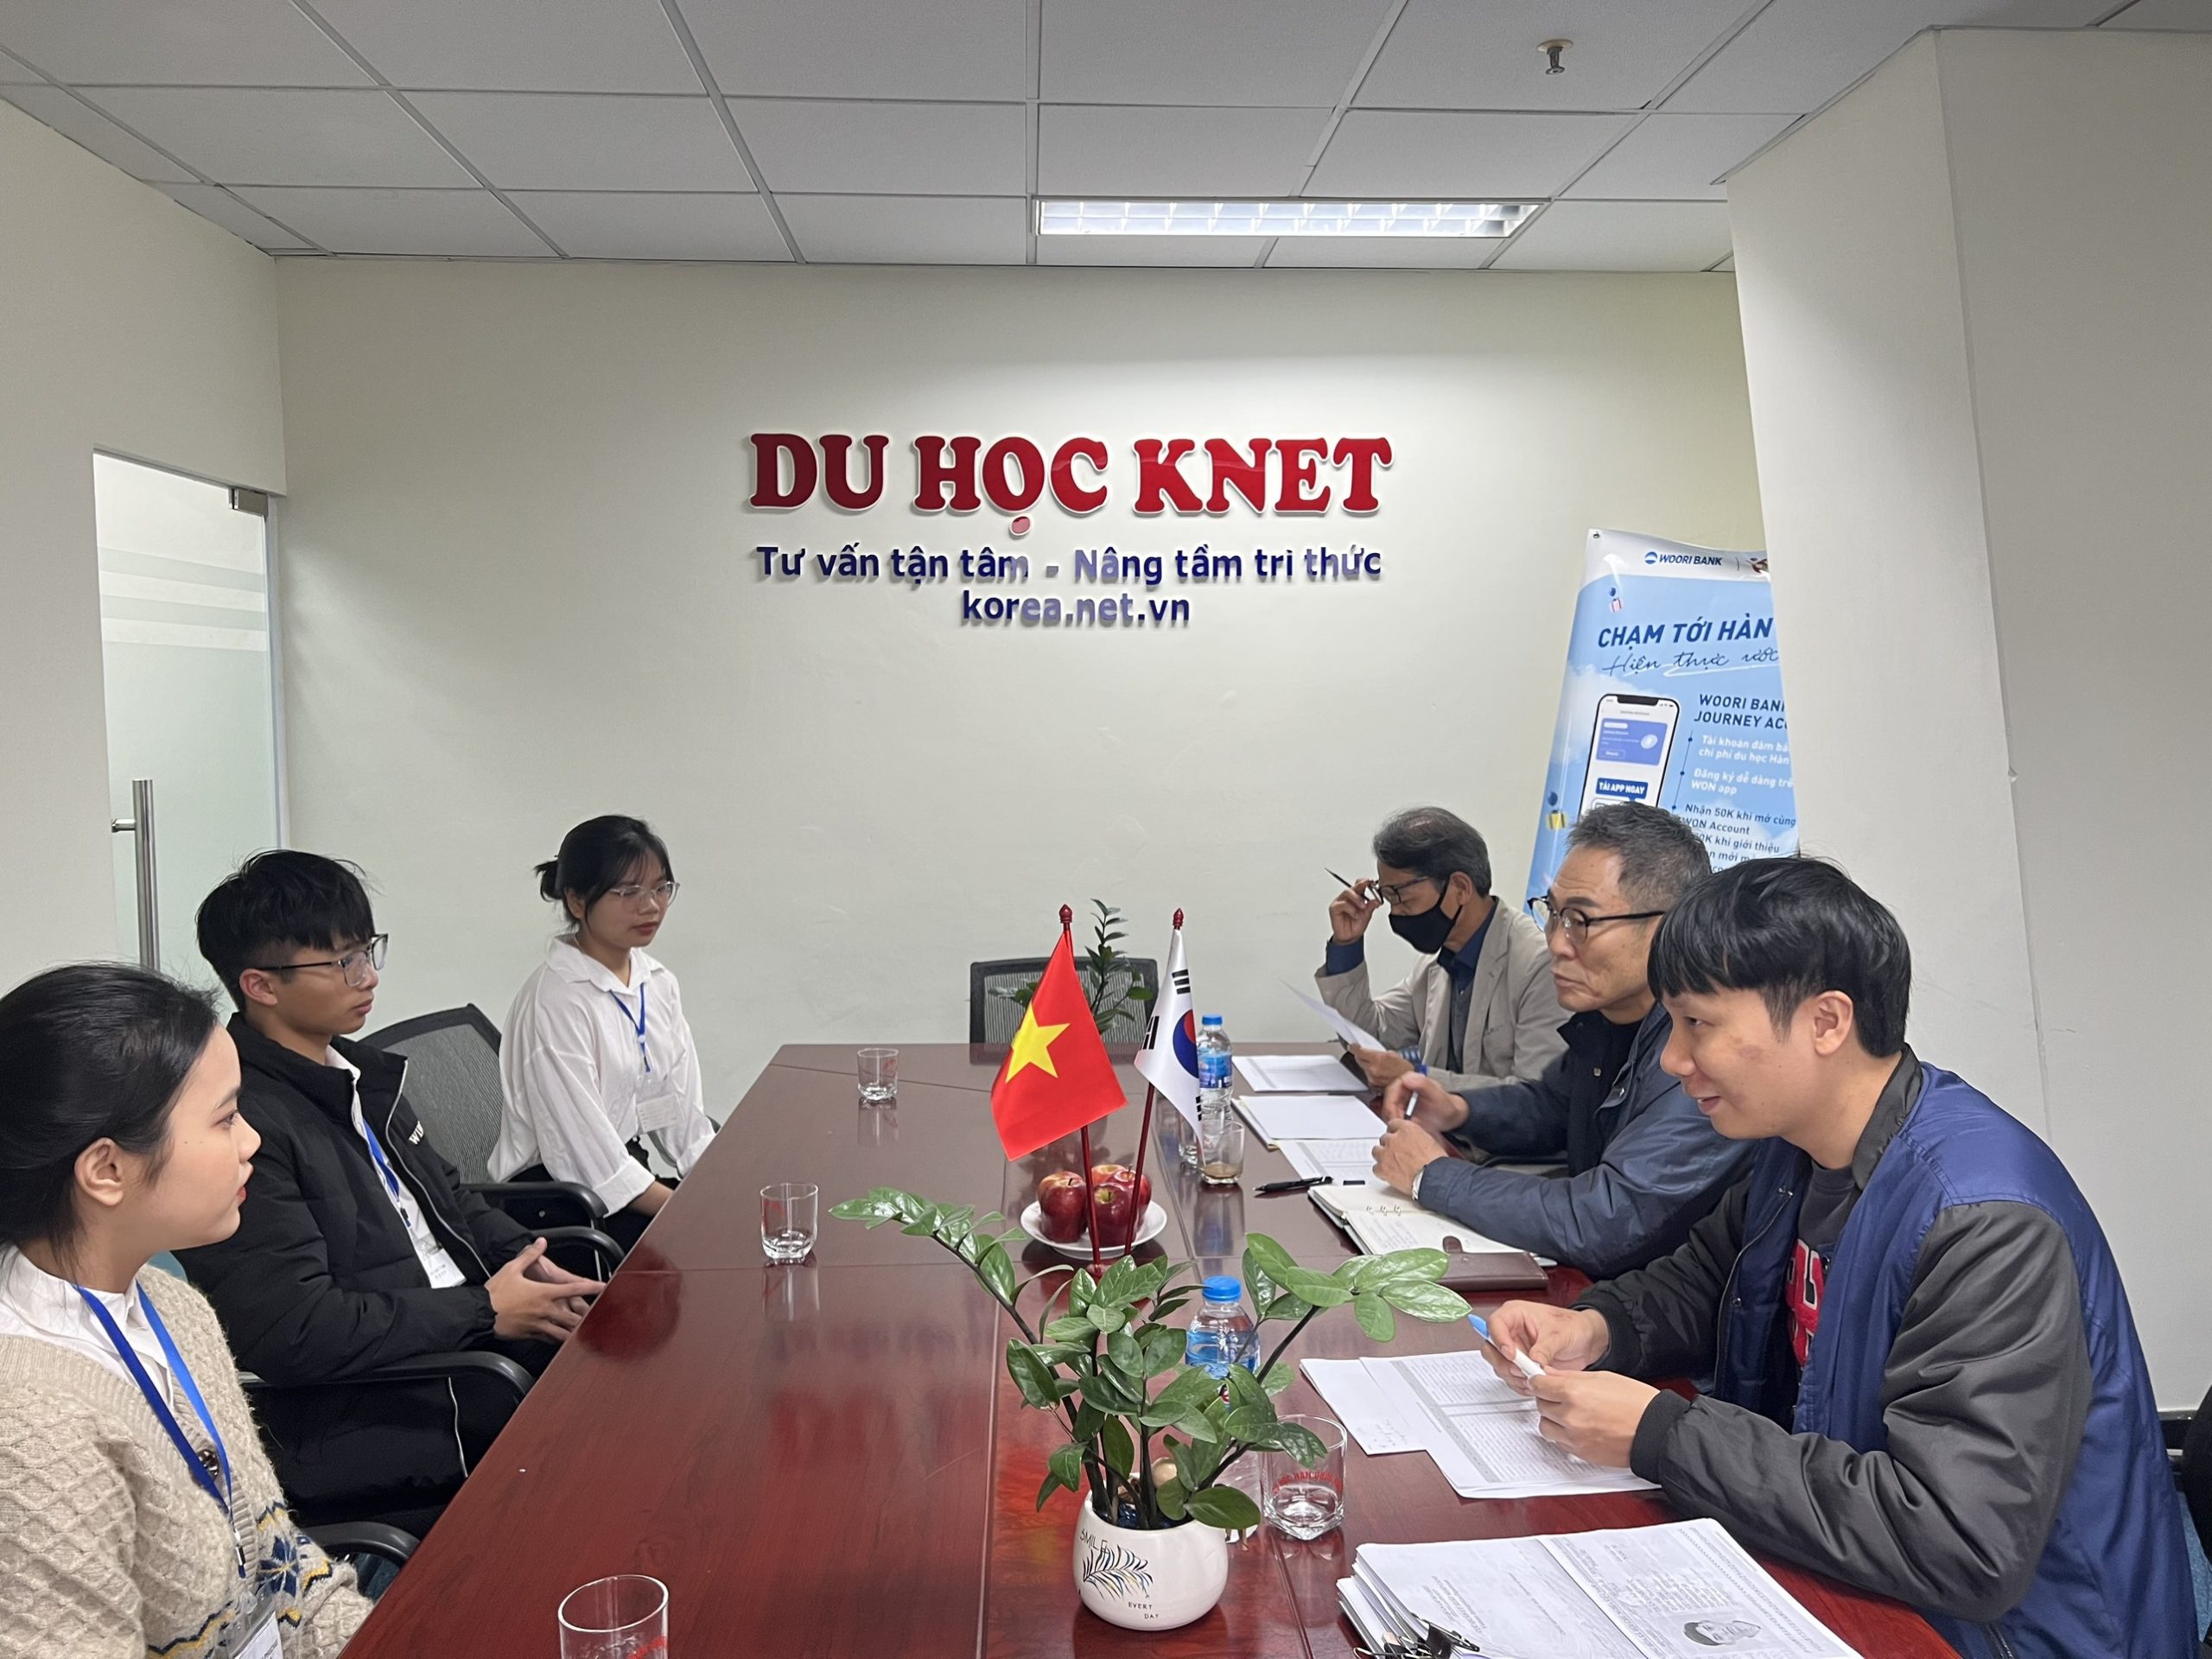 Ảnh viện trưởng trường Tongwon về trực tiếp Knet phỏng vấn nhận du học sinh